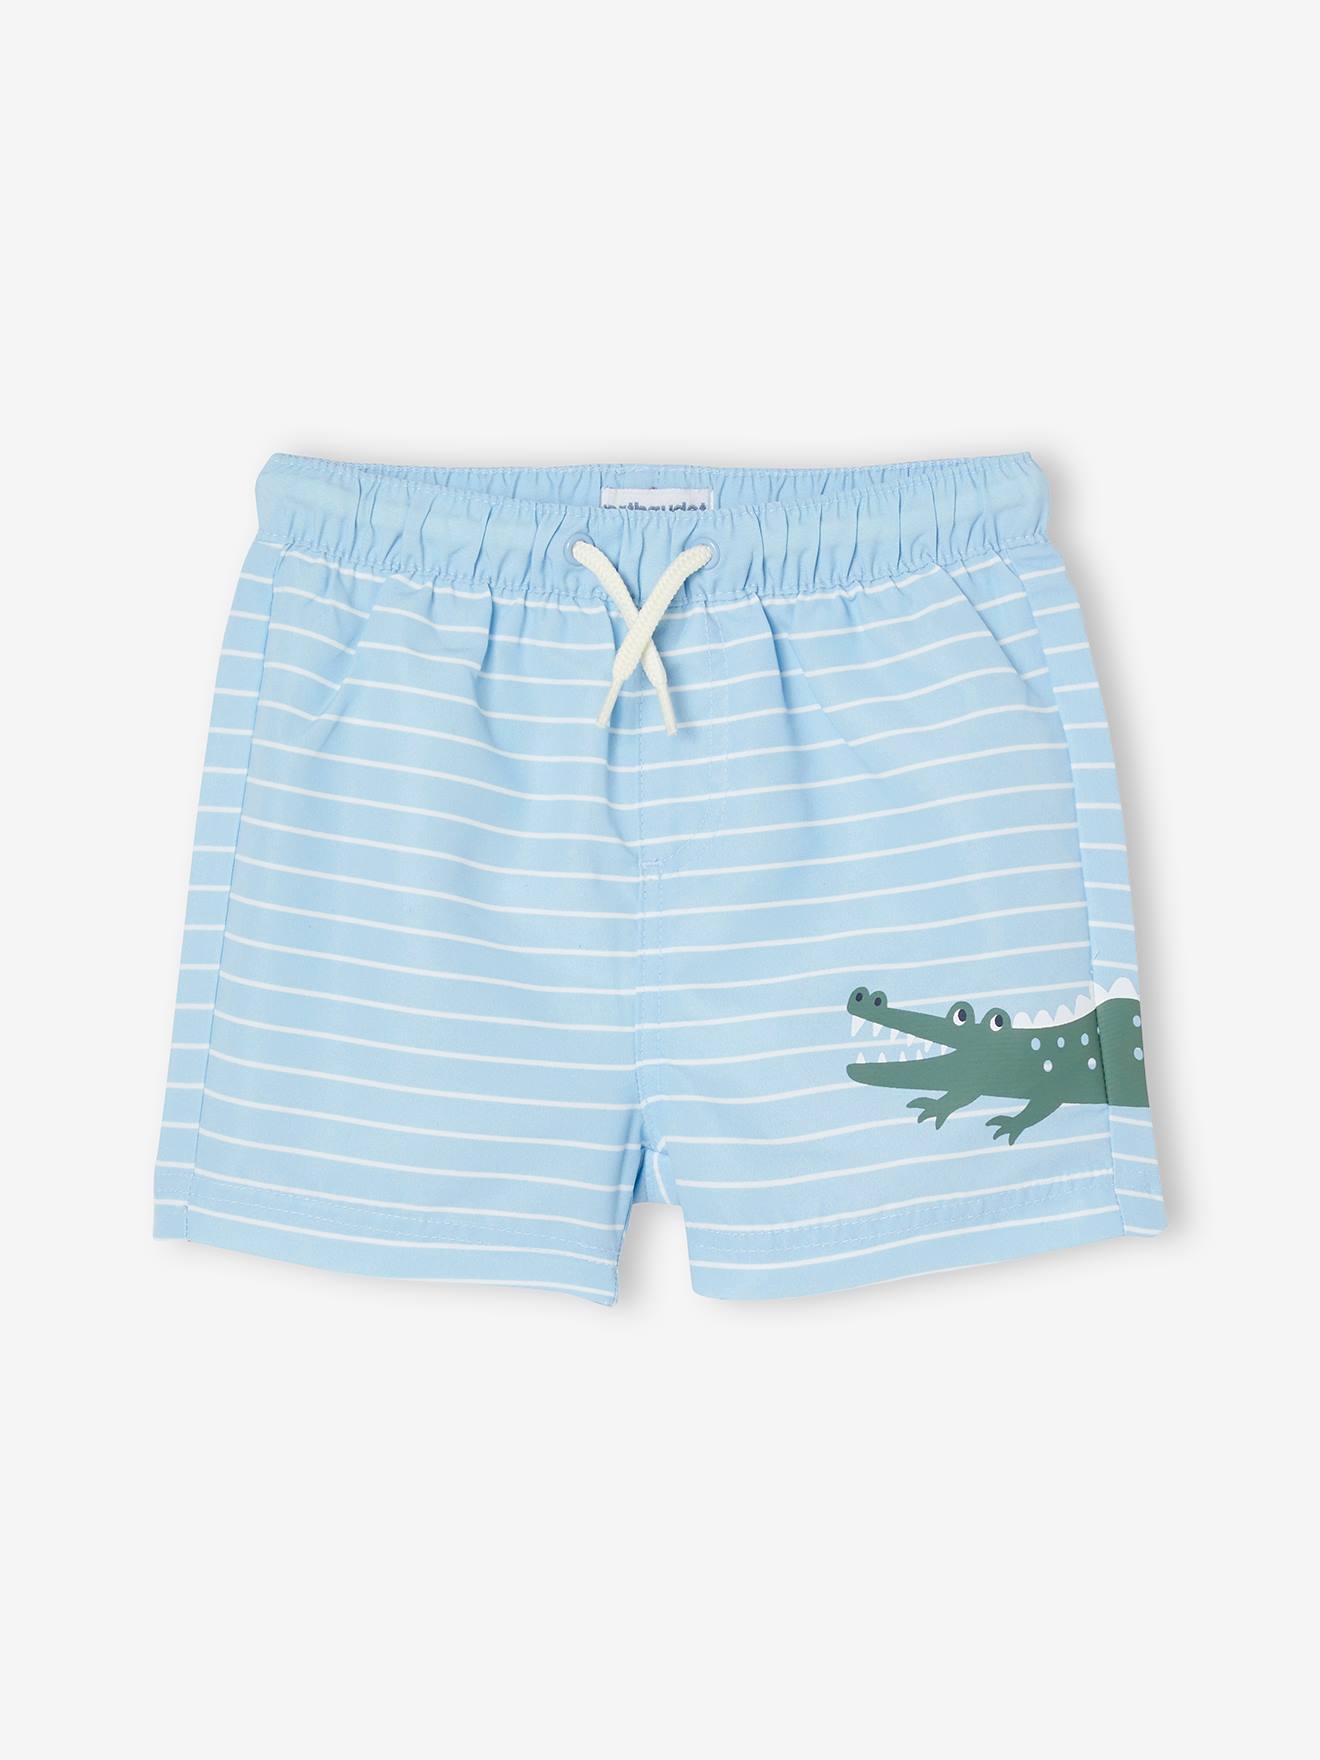 Men's Crocodile Print Swim Trunks - Men's Shorts & Swim - New In